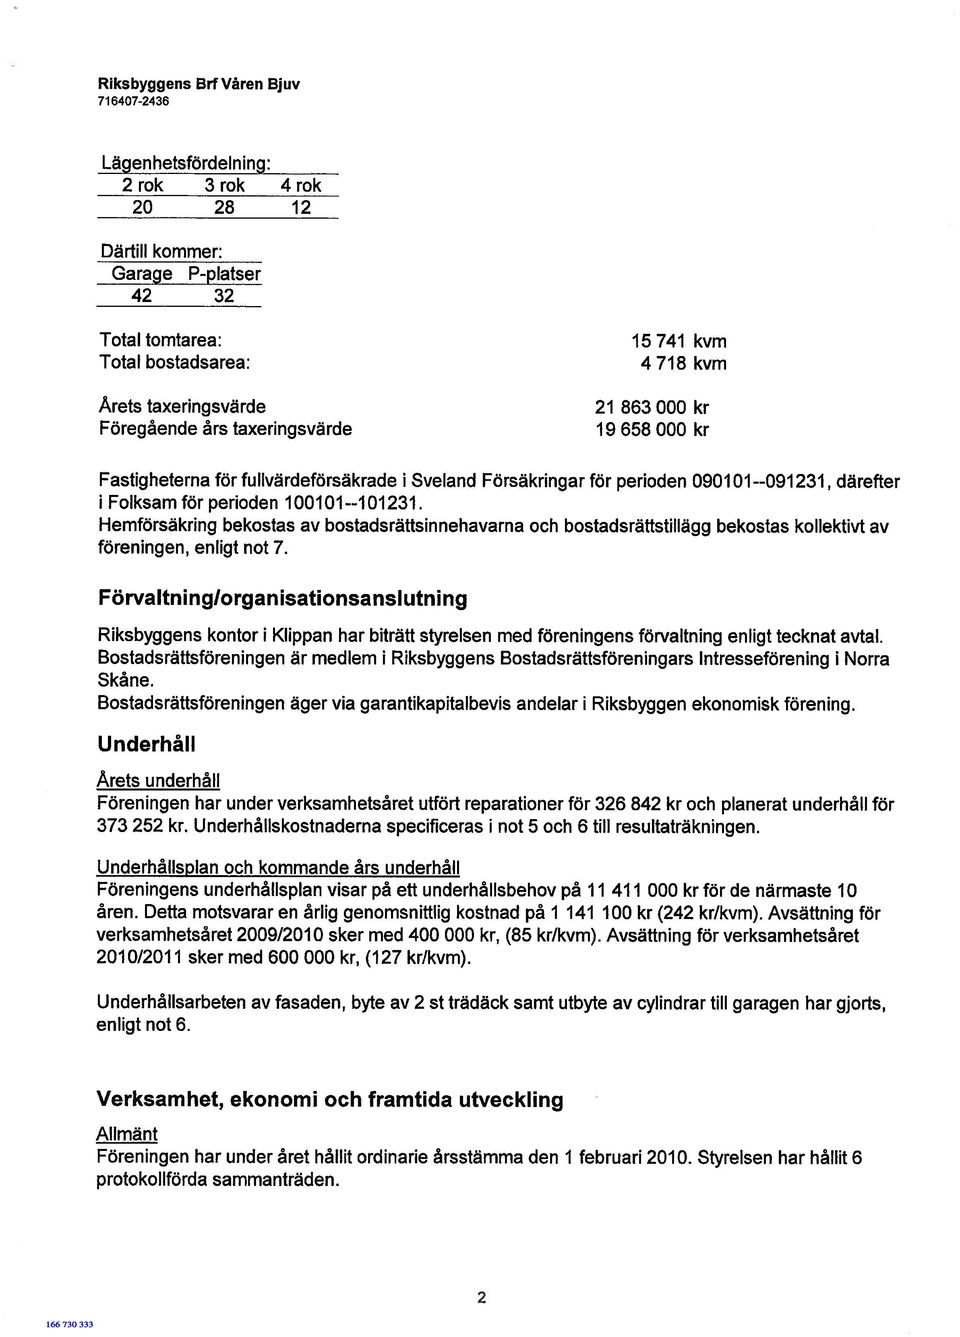 kr 19 658 000 kr Fastigheterna för fullvärdeförsäkrade i Sveland Försäkringar för perioden 090101 --091231, därefter i Folksam för perioden 100101--101231.